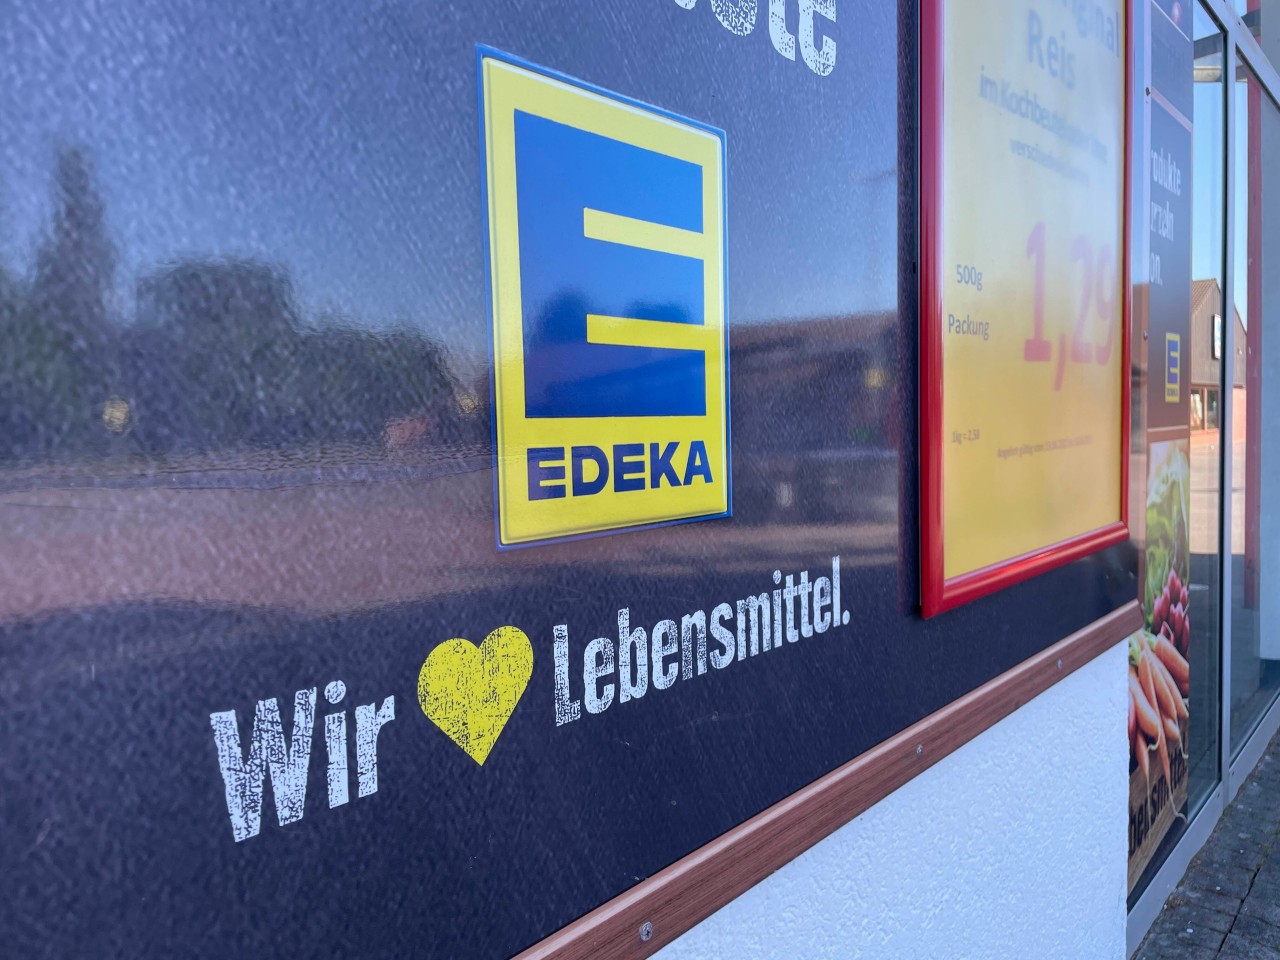 Dieser Edeka-Kunden kann seinen Augen kaum trauen, als er einen Blick ins Kühlfach wirft. (Symbolbild)